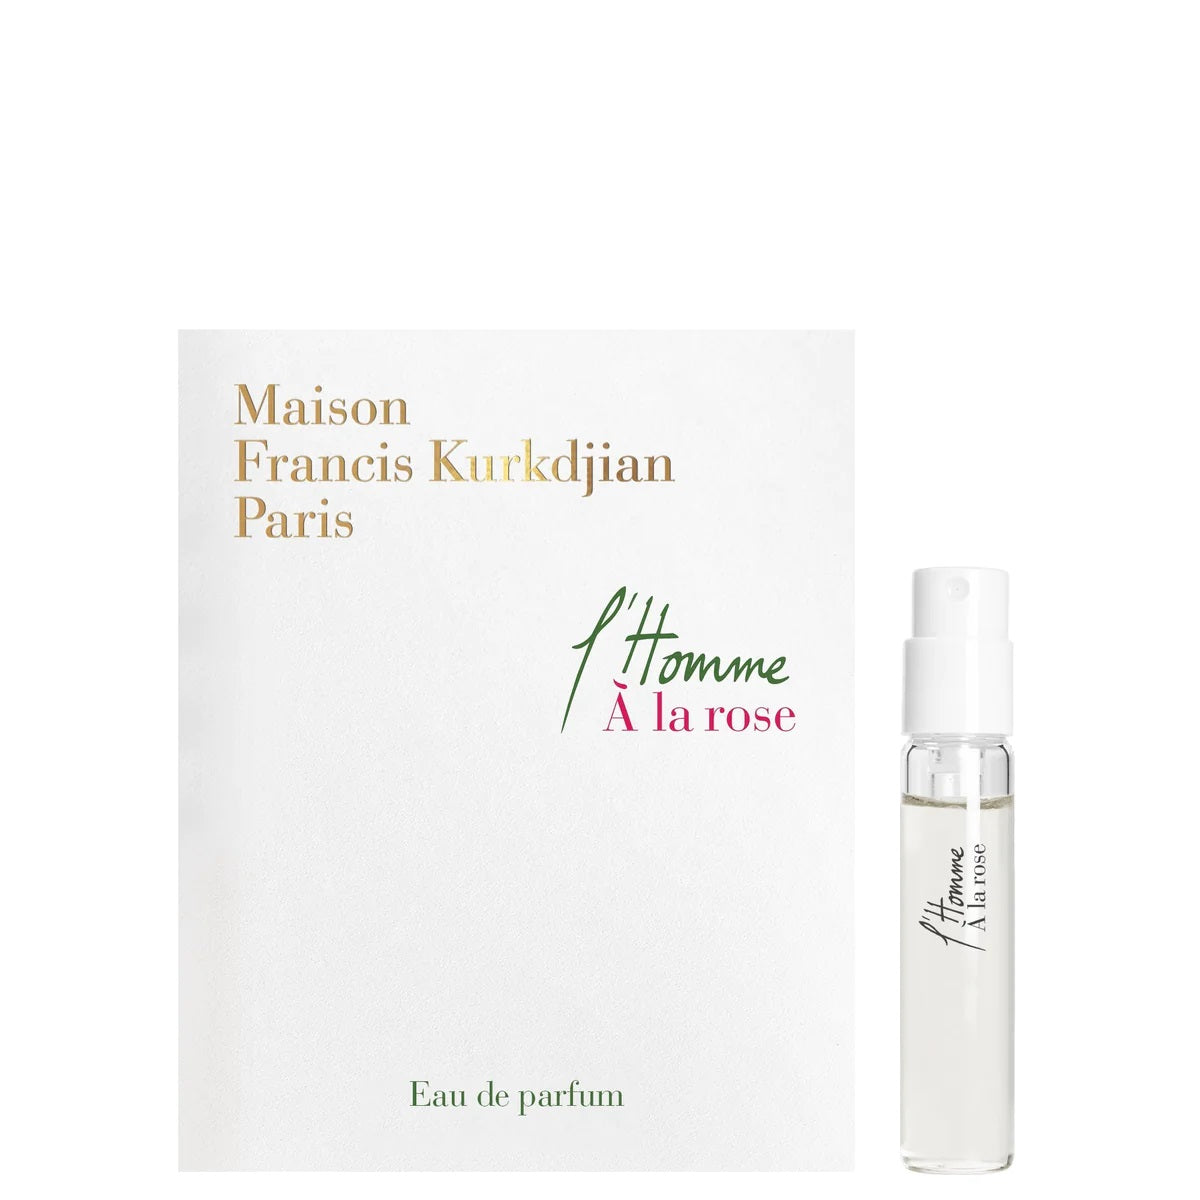 Maison Francis Kurkdjian L'Homme A la Rose 2 ml 0.06 fl. oz. oficiální vzorky vůní